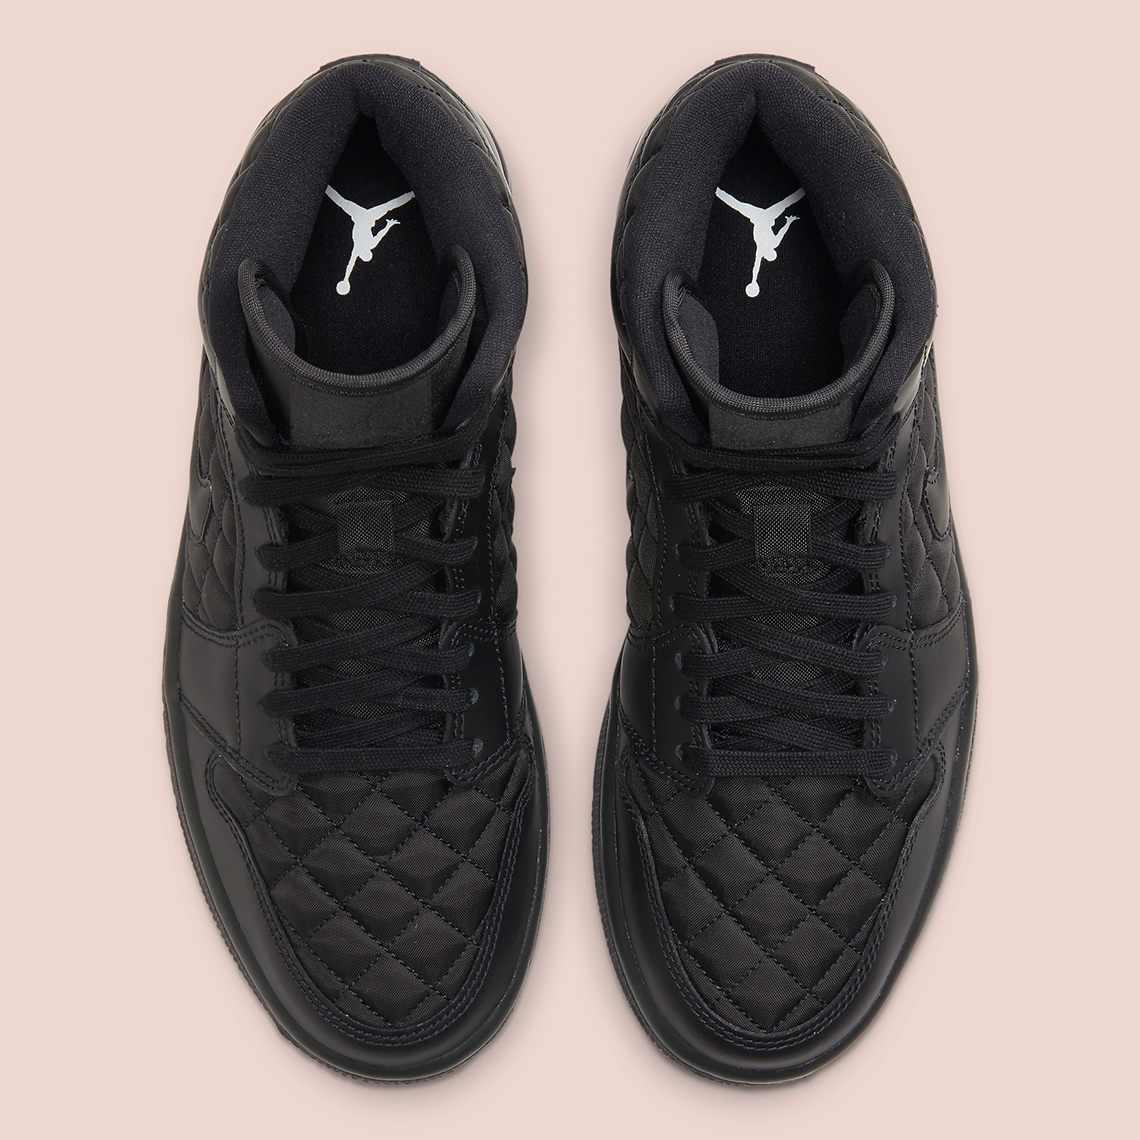 Air Jordan 1 Mid “Triple Black” Quilted Aerial View